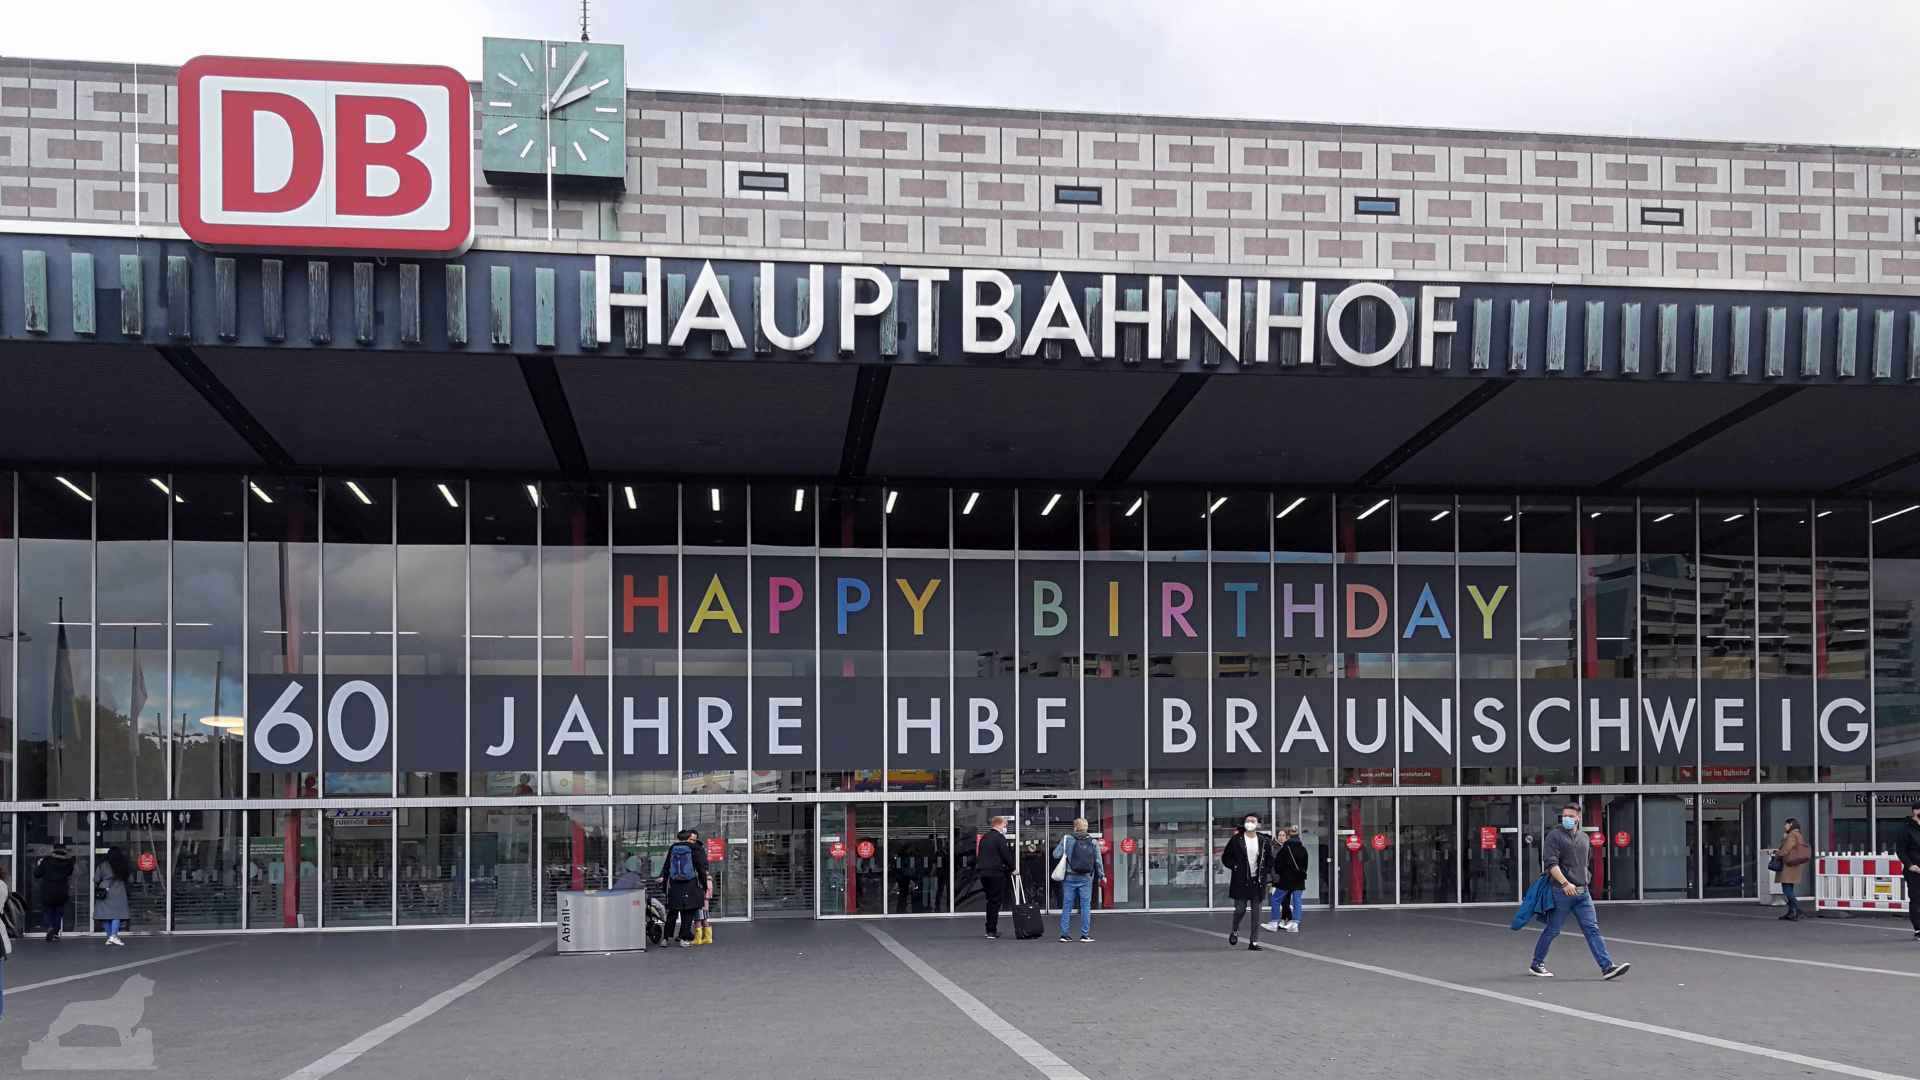 60 Jahre Hauptbahnhof Braunschweig